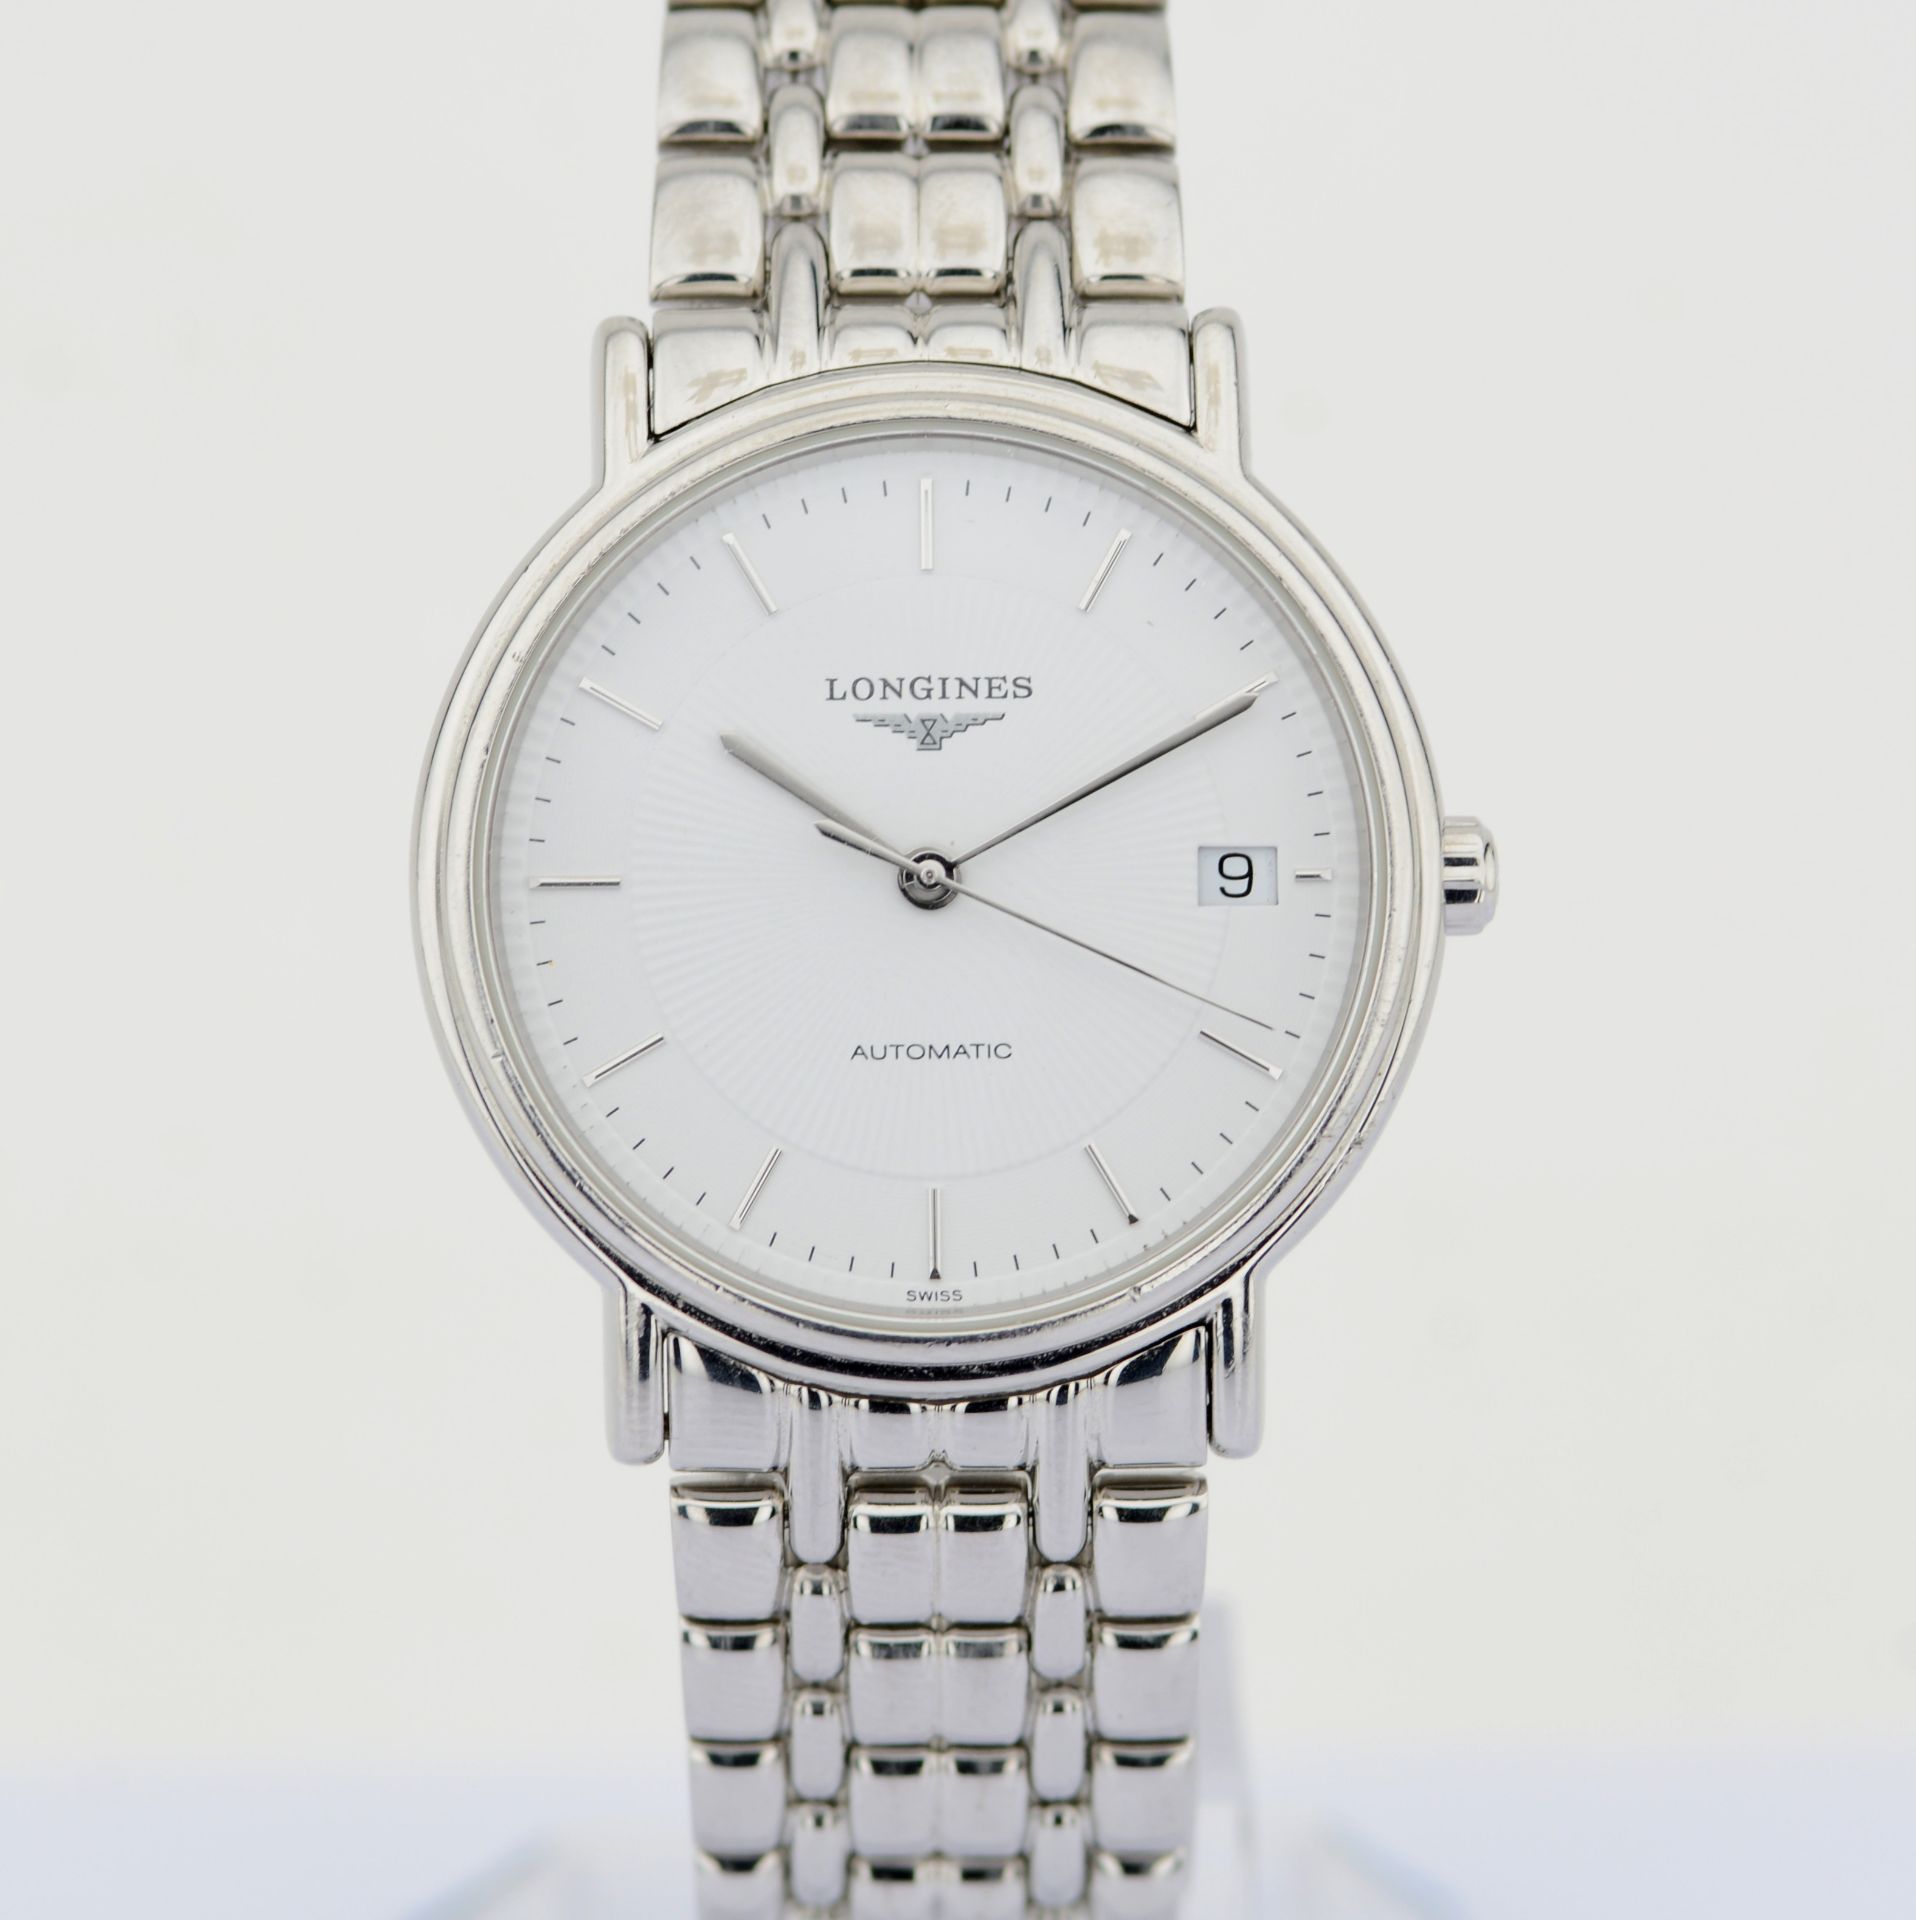 Longines / Presence Automatic Date 34 mm - Gentlmen's Steel Wrist Watch - Image 8 of 8